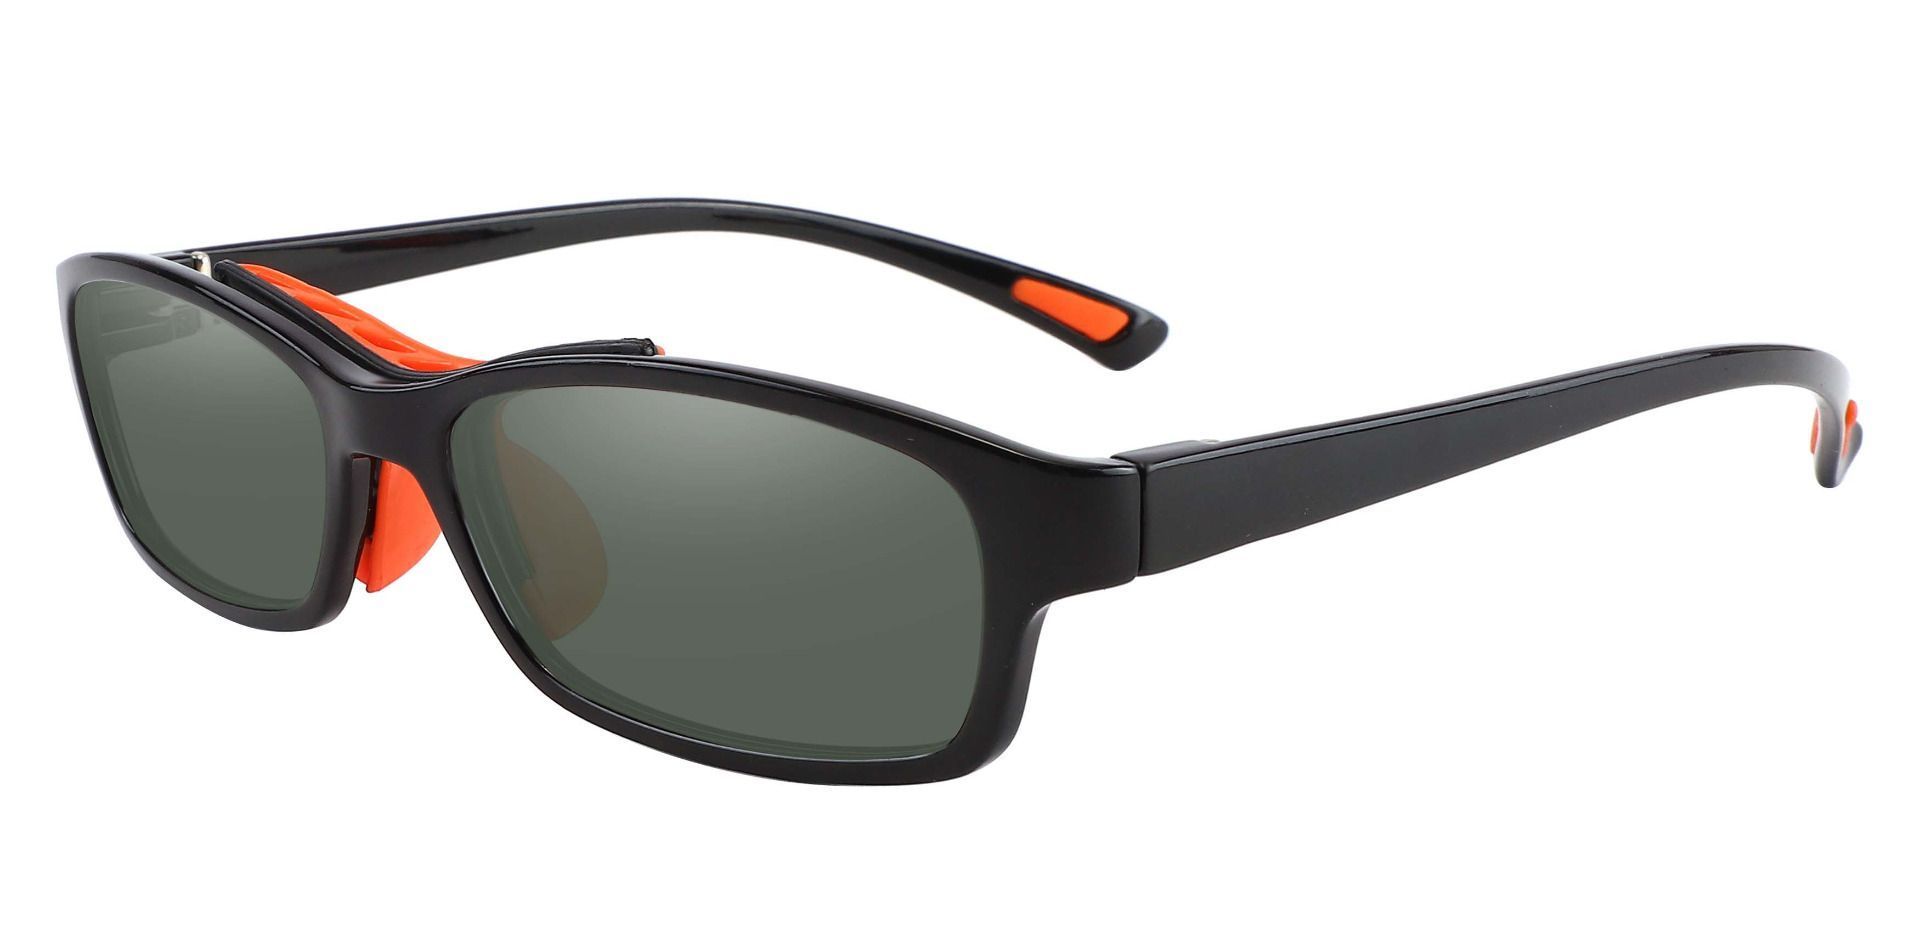 Glynn Rectangle Progressive Sunglasses - Black Frame With Green Lenses